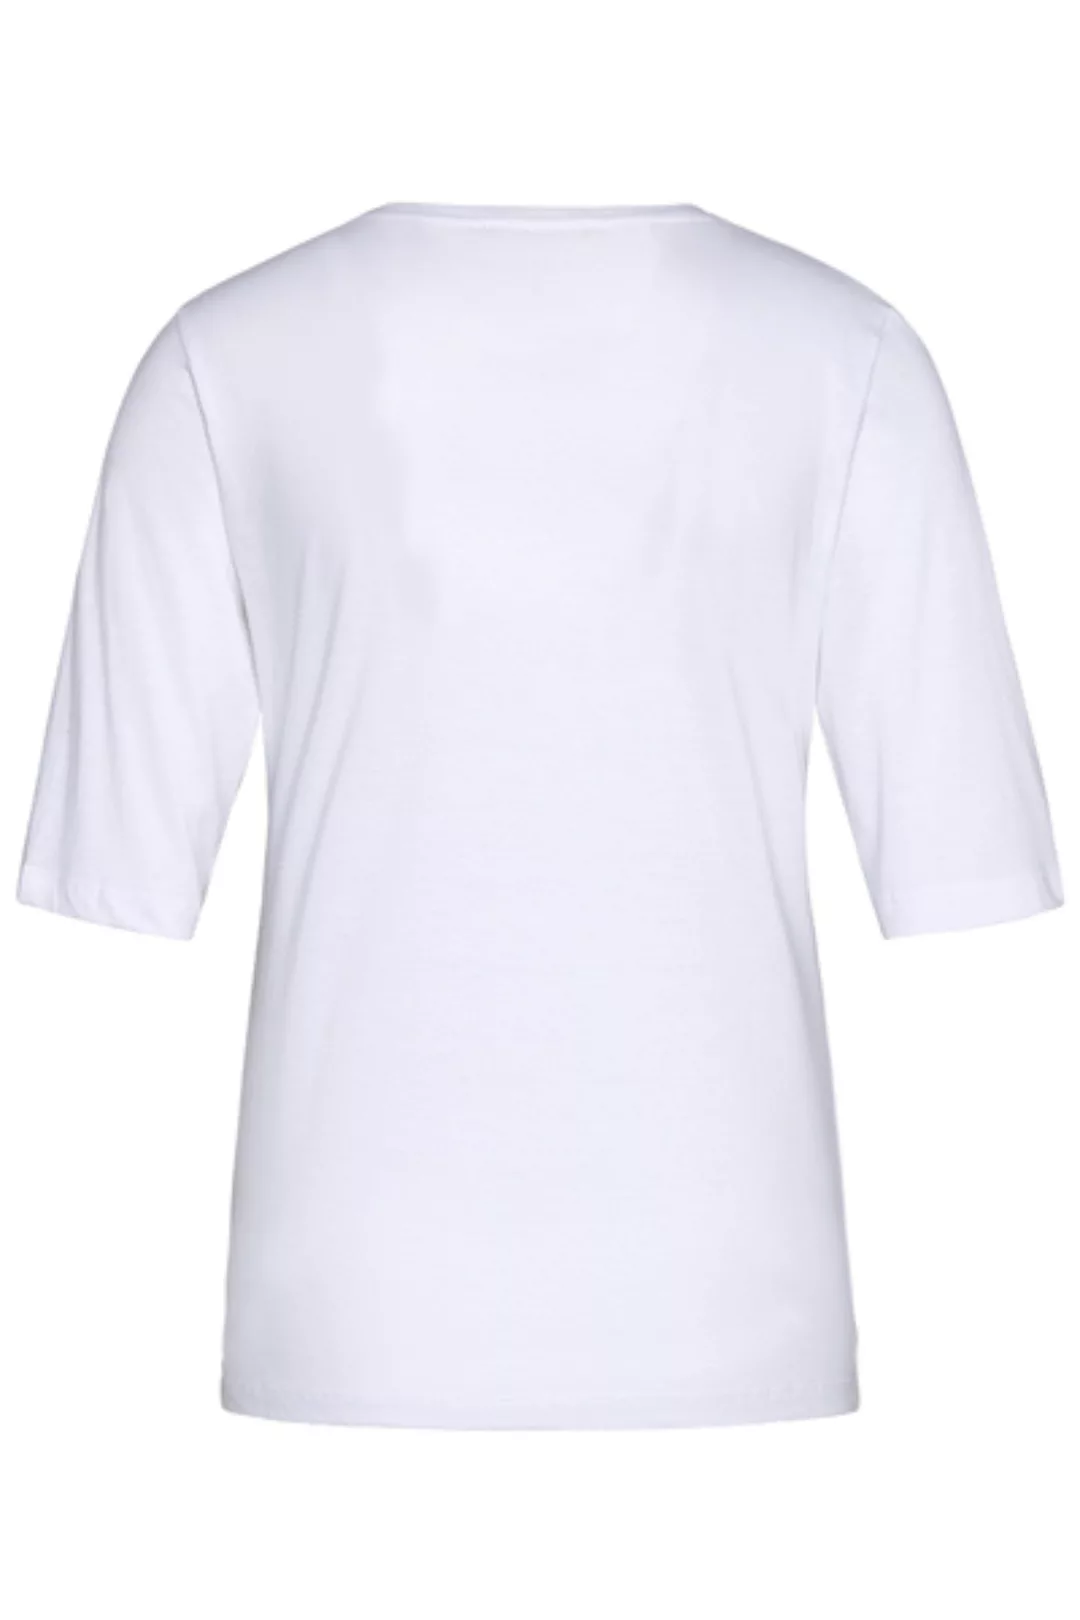 wunderwerk 3/4-Arm-Shirt Metro core crew tee 1/2 günstig online kaufen